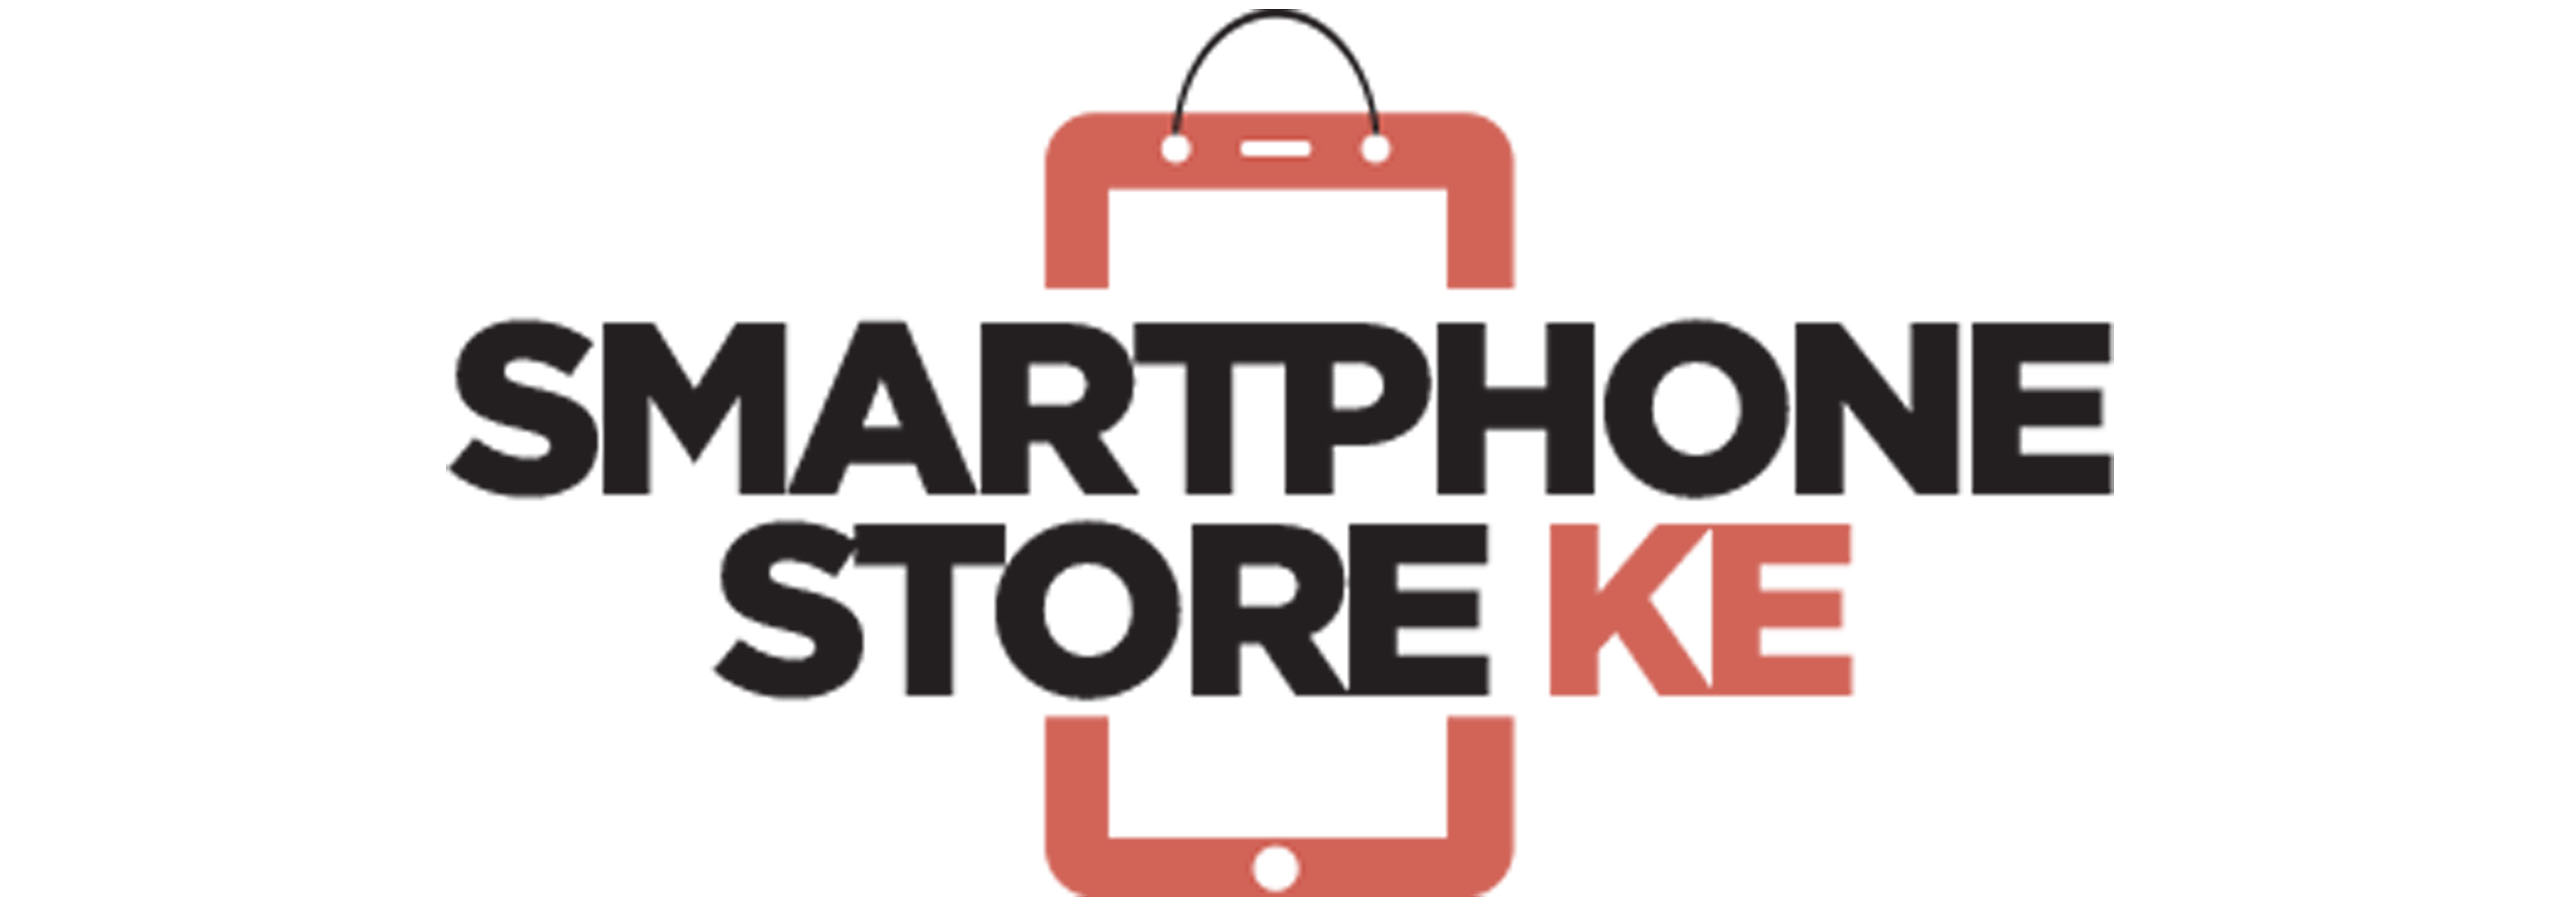 Smart Phone Store Kenya